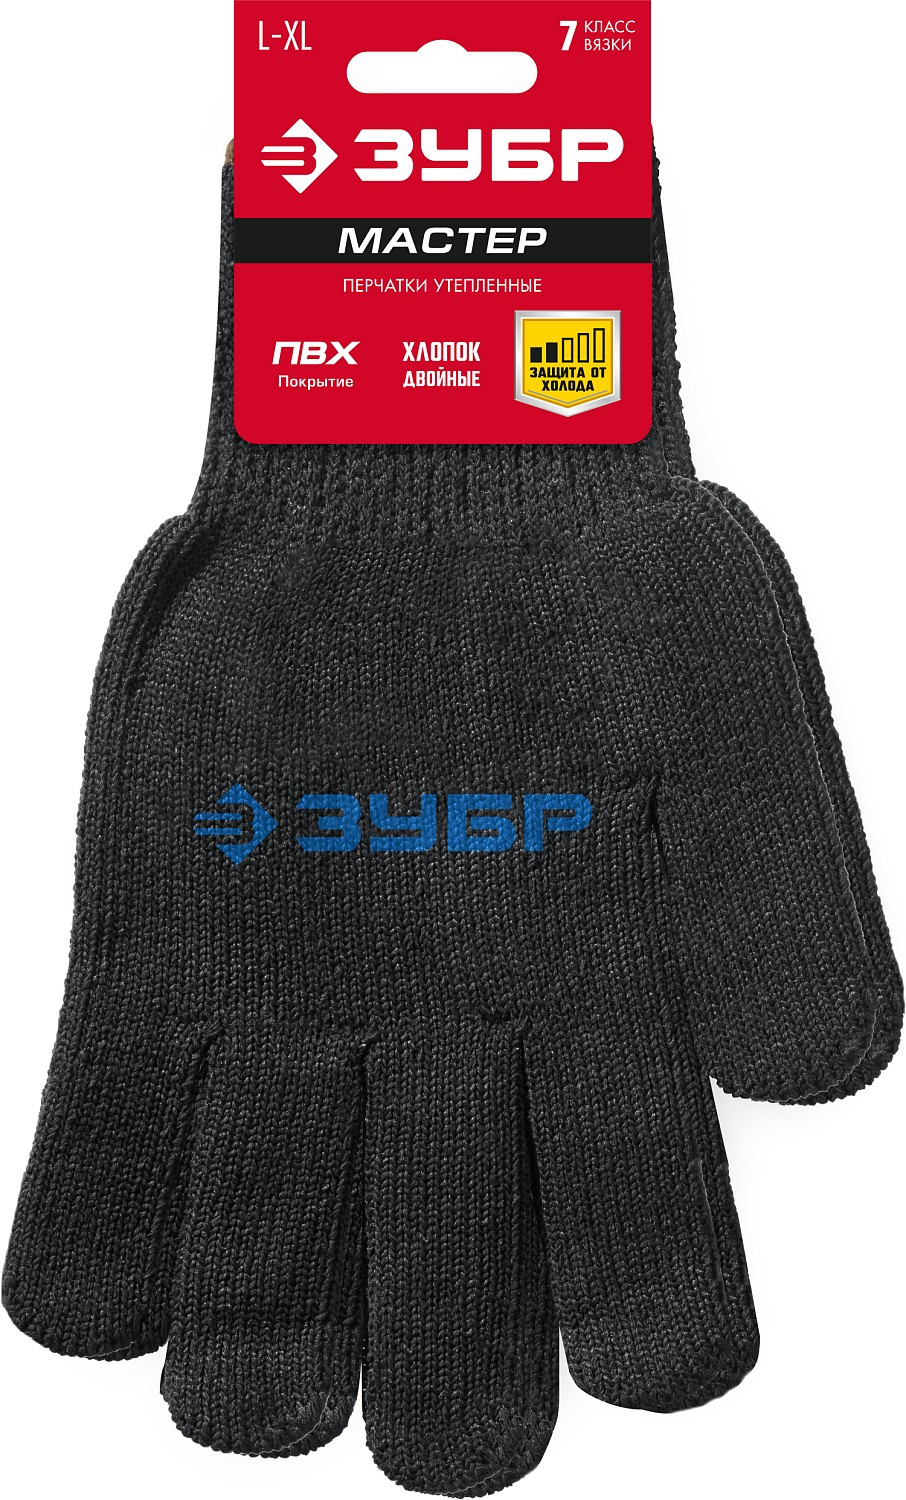 ЗУБР МАСТЕР, L-XL, полушерстяные перчатки с точечным ПВХ покрытием, утеплённые, противоскользящие, 7 класс (11462-XL)